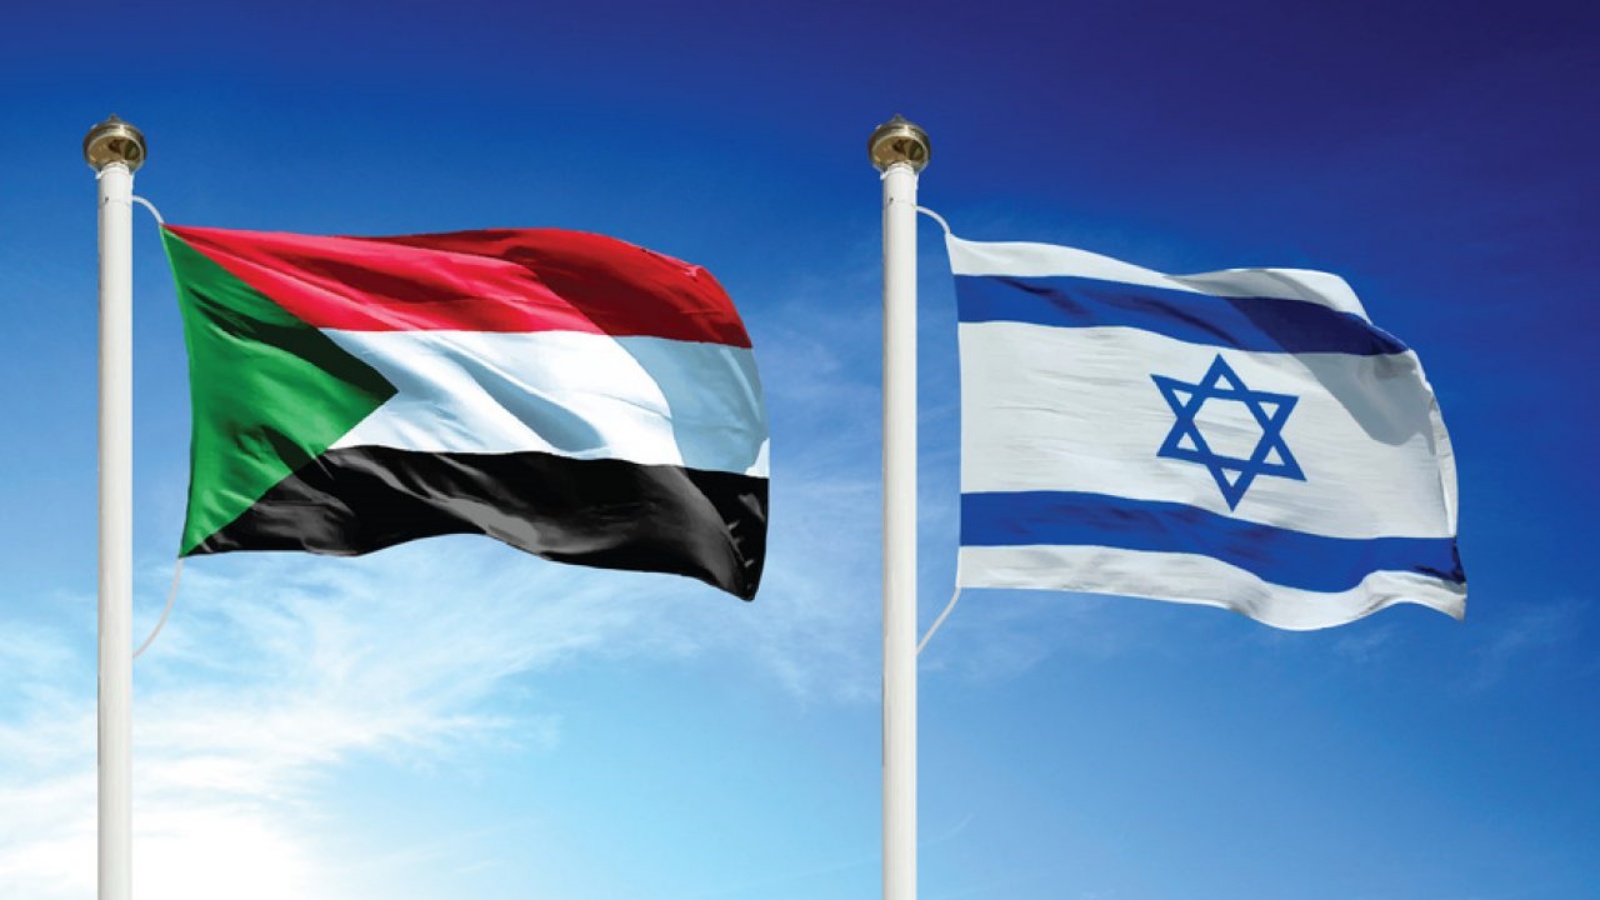 السودان يؤكد زيارة وفد إسرائيلي الأسبوع الماضي للخرطوم